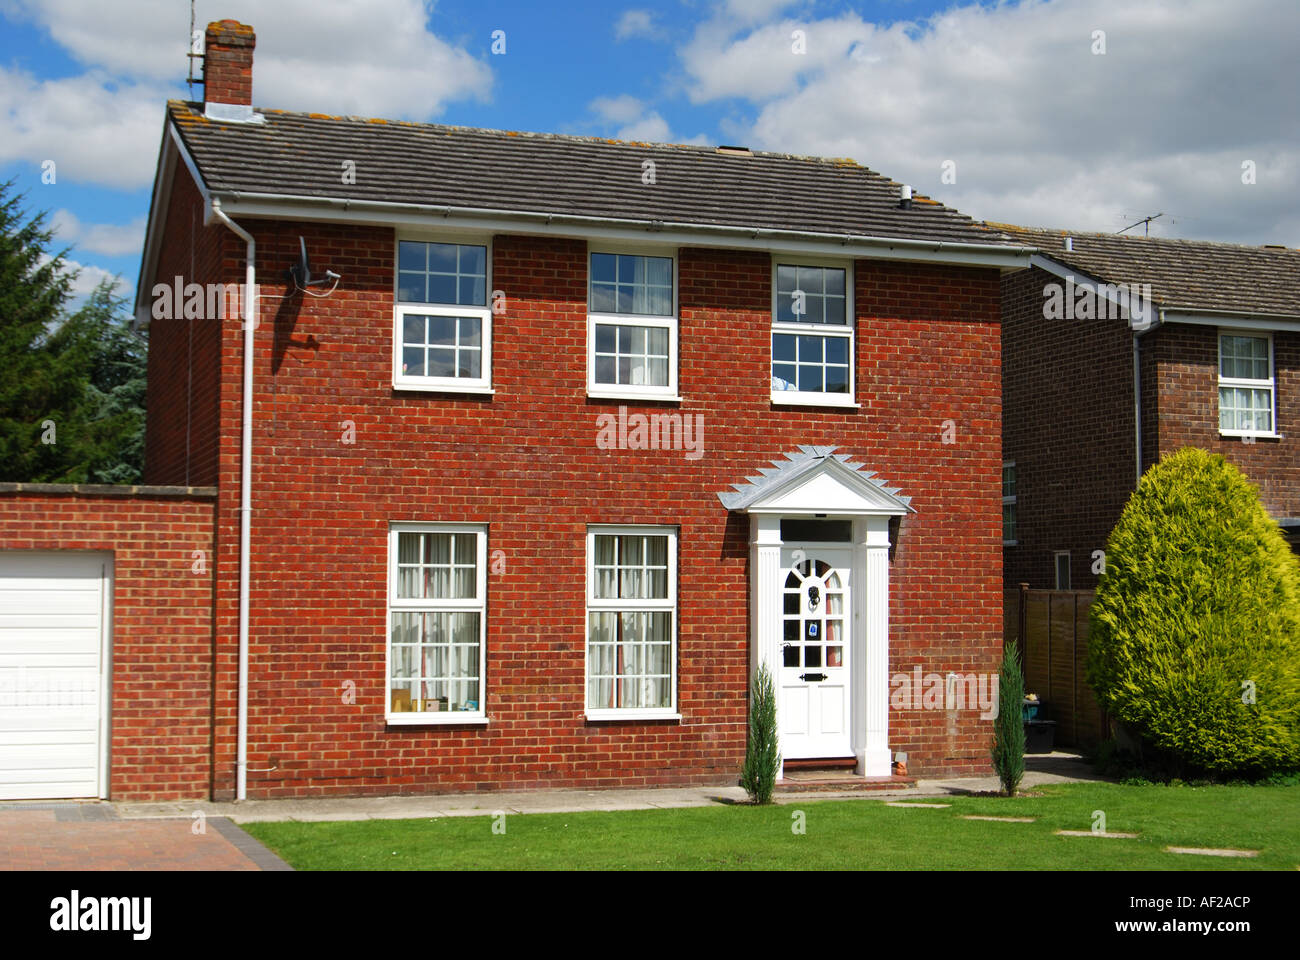 Maisons individuelles modernes, Barratt Homes Development, Edwinstowe, Notinghamshire, Angleterre, Royaume-Uni Banque D'Images